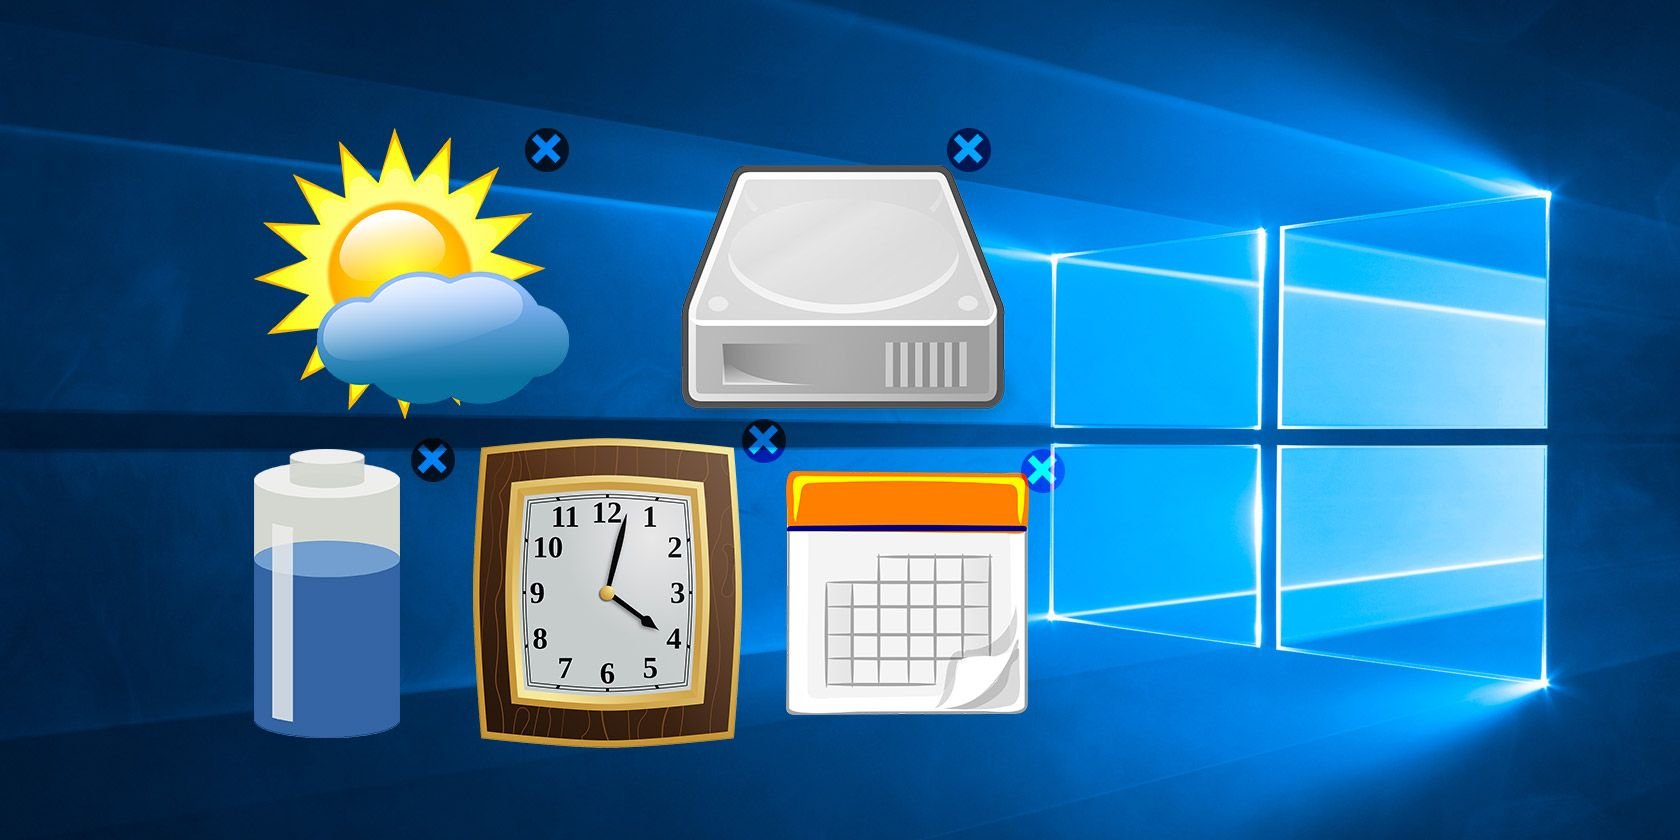 How to Get Windows 10 Widgets on Your Desktop